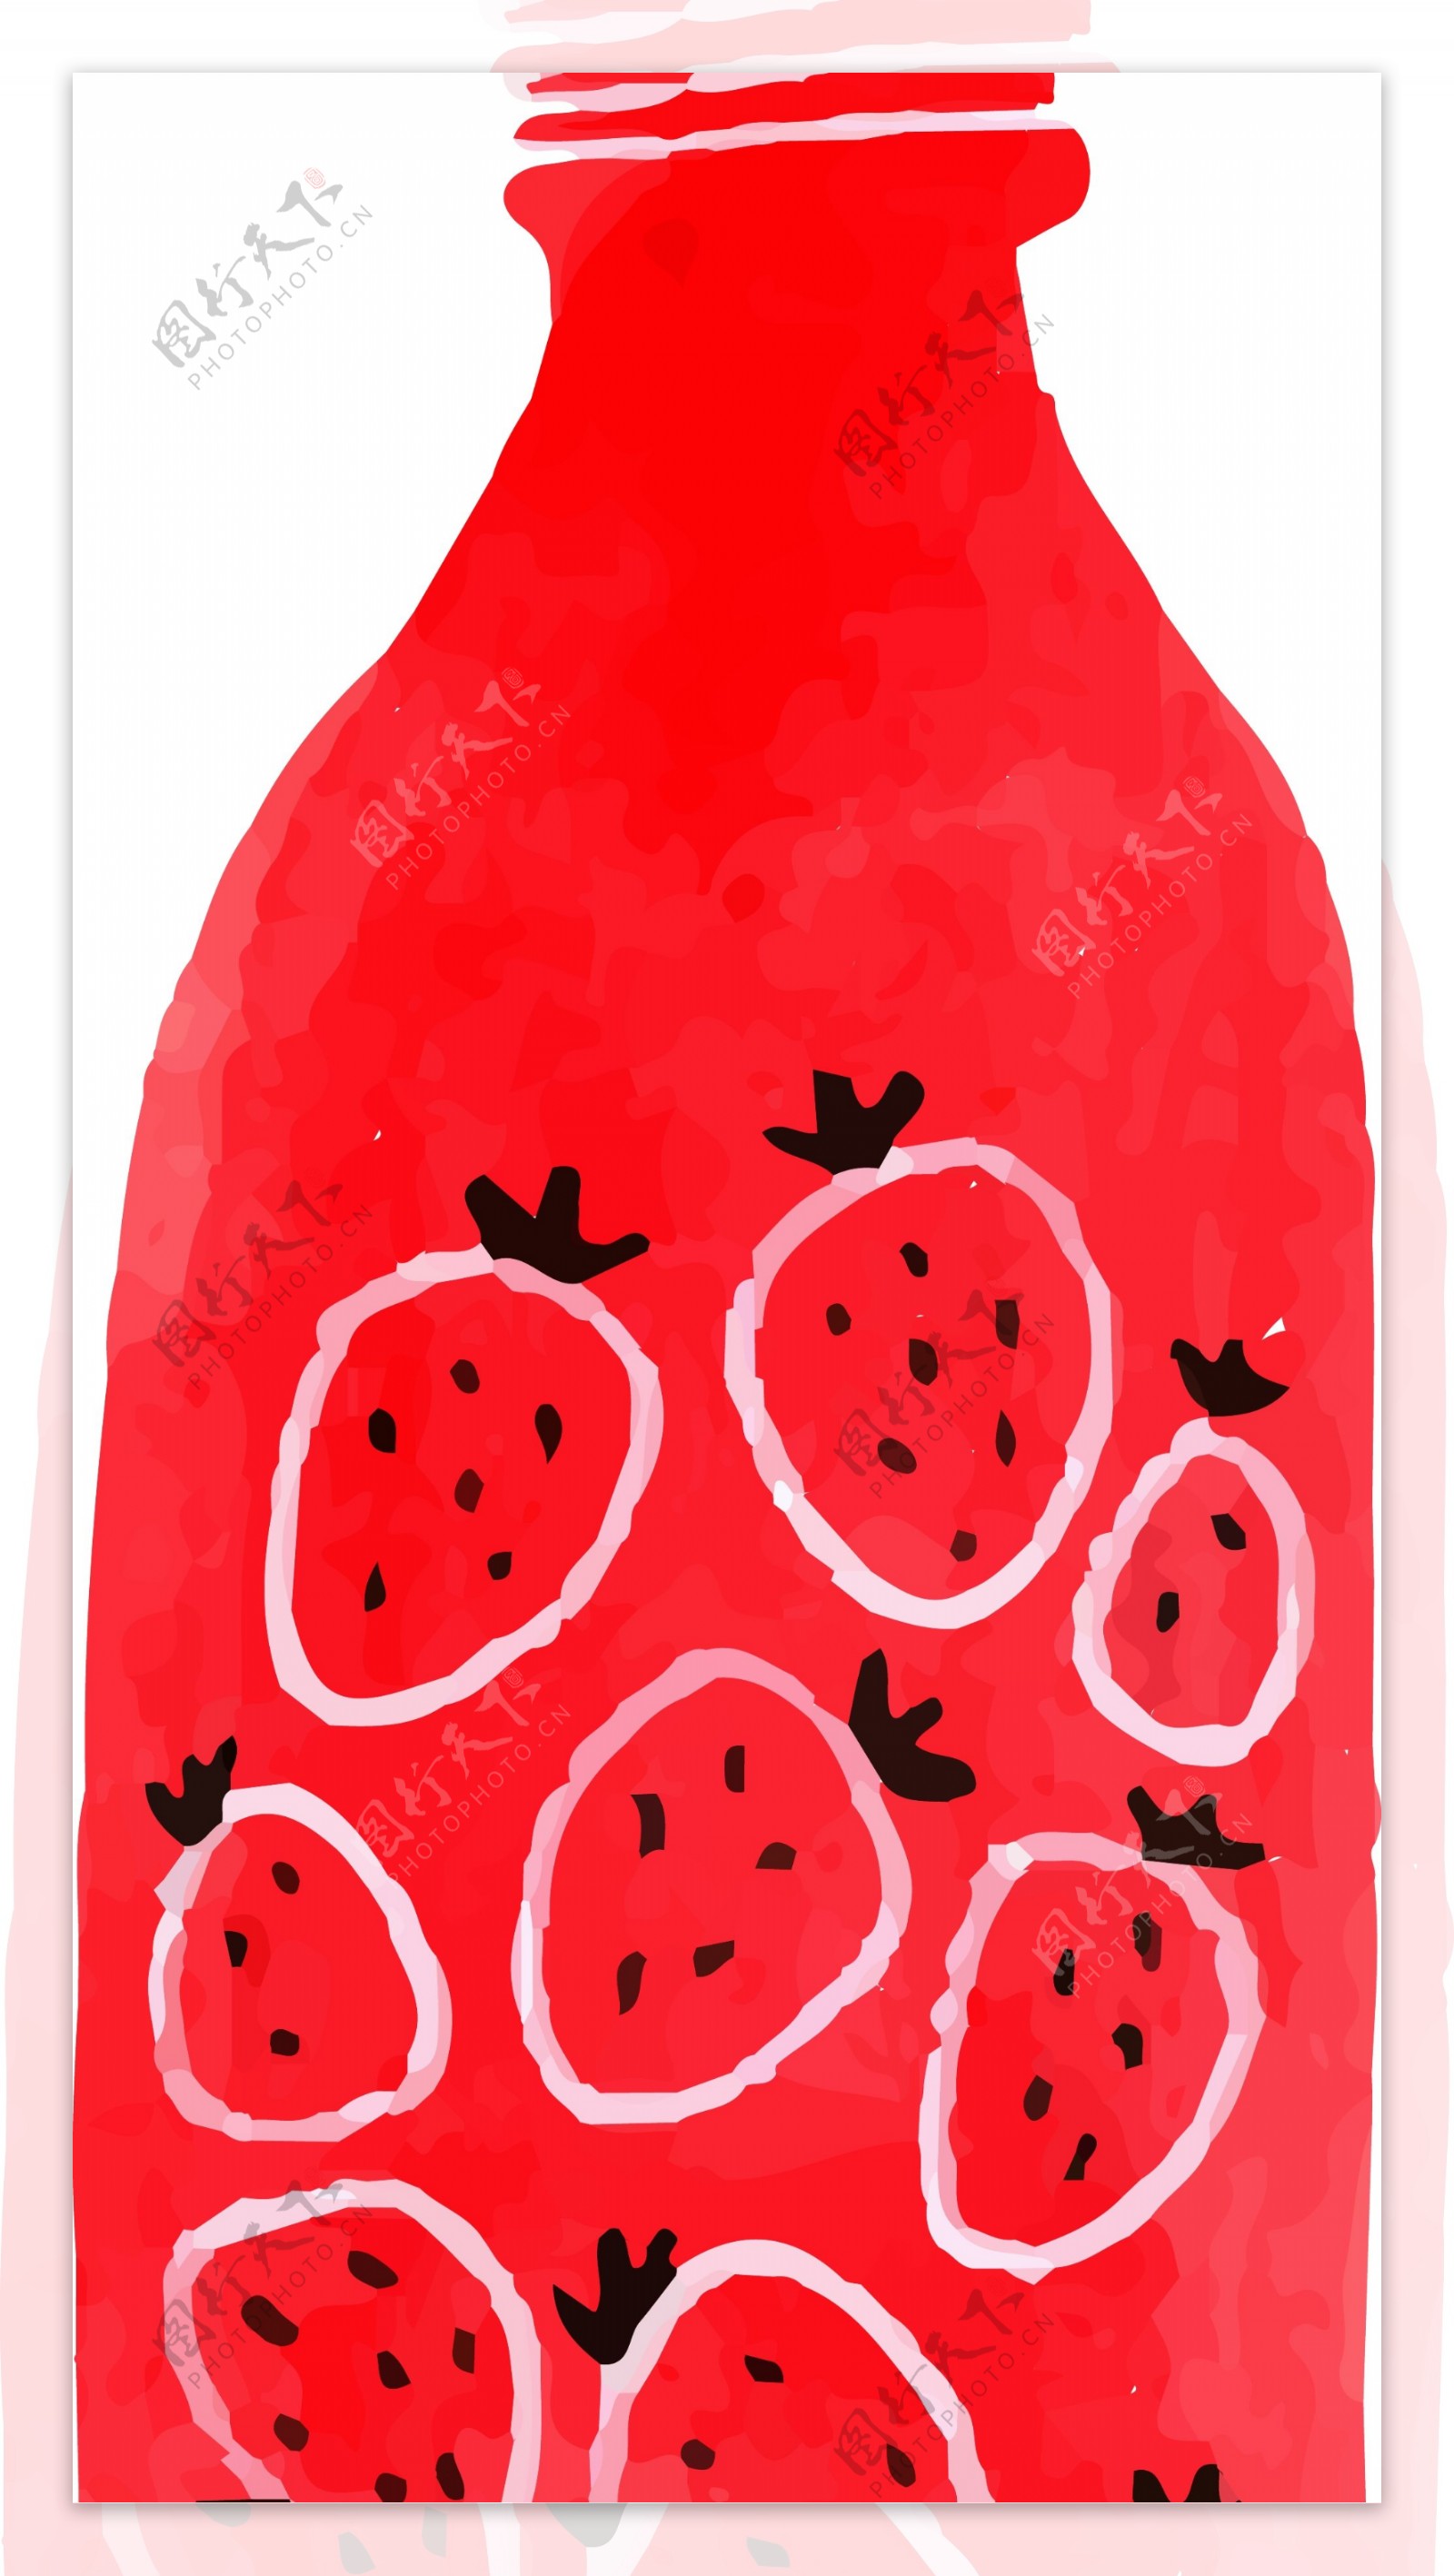 原创手绘一瓶草莓味的饮料